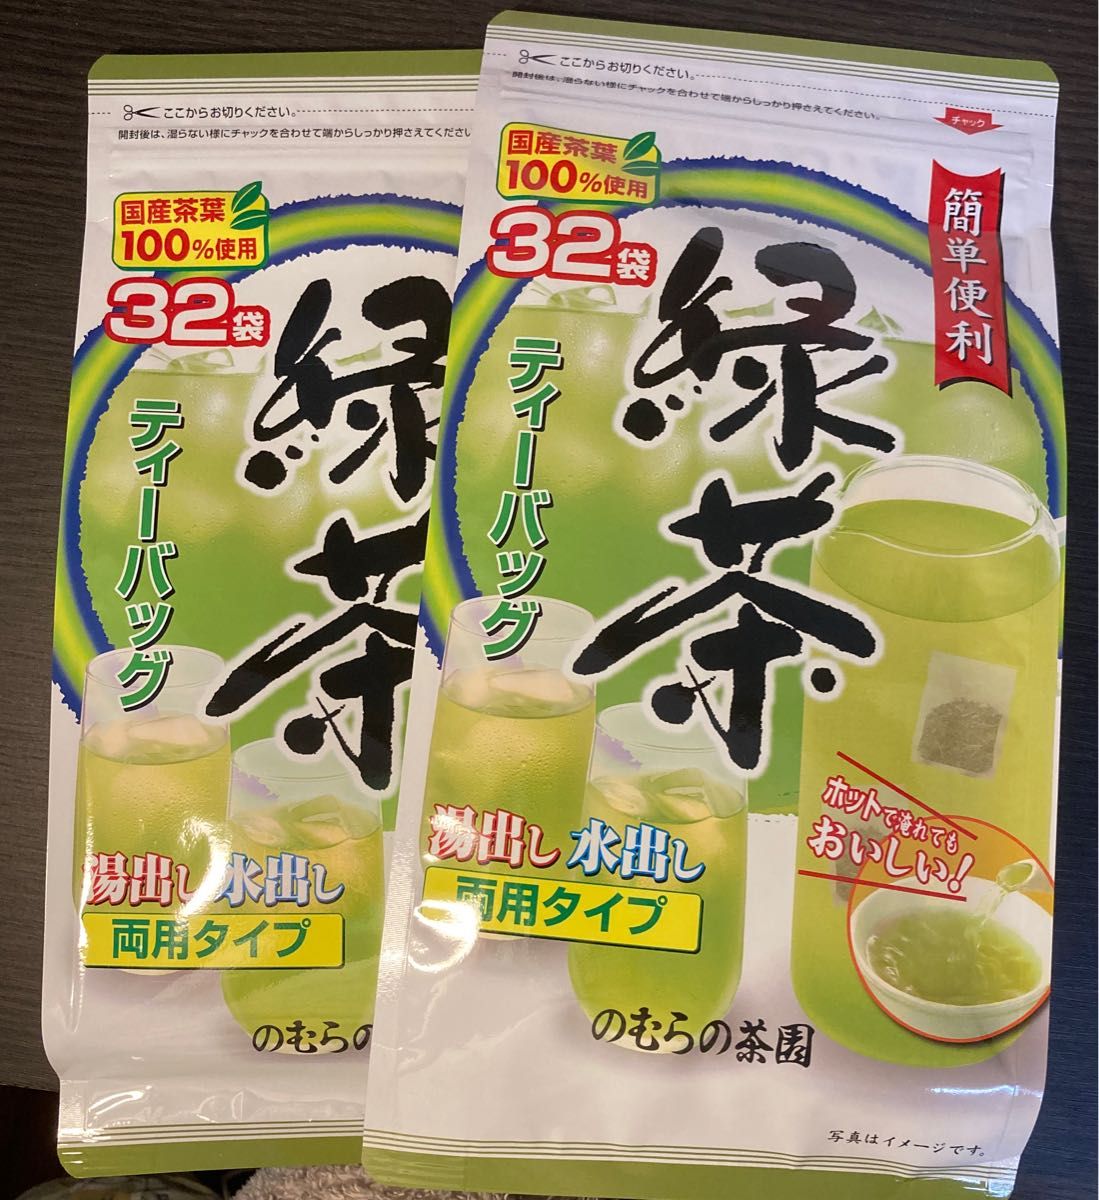 のむらの茶園 緑茶 ティーバッグ(3g*32袋入)×2袋